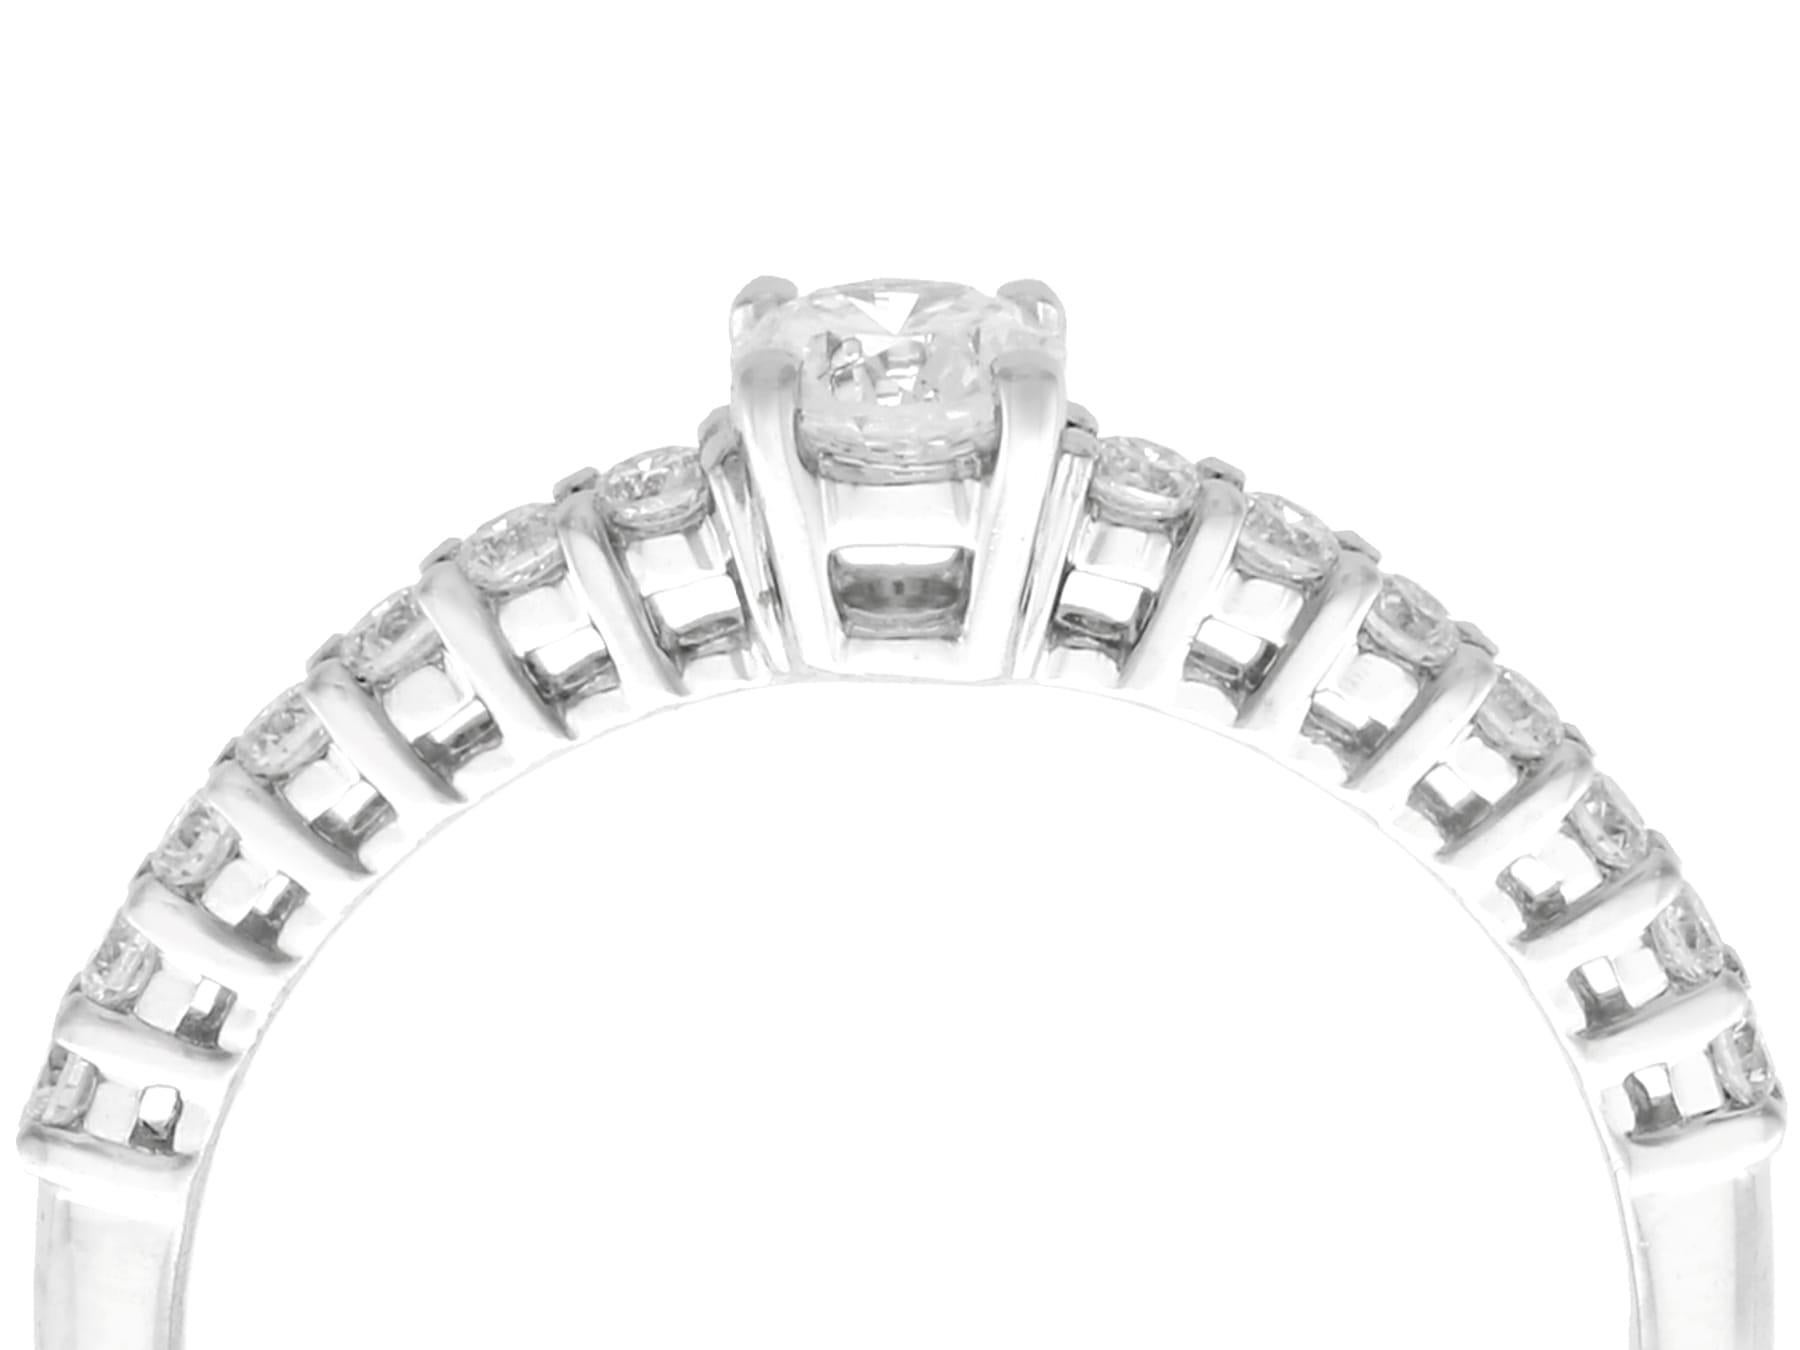 Ein beeindruckender zeitgenössischer Ring mit 0,46 Karat Diamant und 18 Karat Weißgold; Teil unserer vielfältigen Sammlungen von antikem Schmuck und Nachlassschmuck.

Dieser feine und beeindruckende Diamantring mit Diamantschultern ist aus 18 Karat